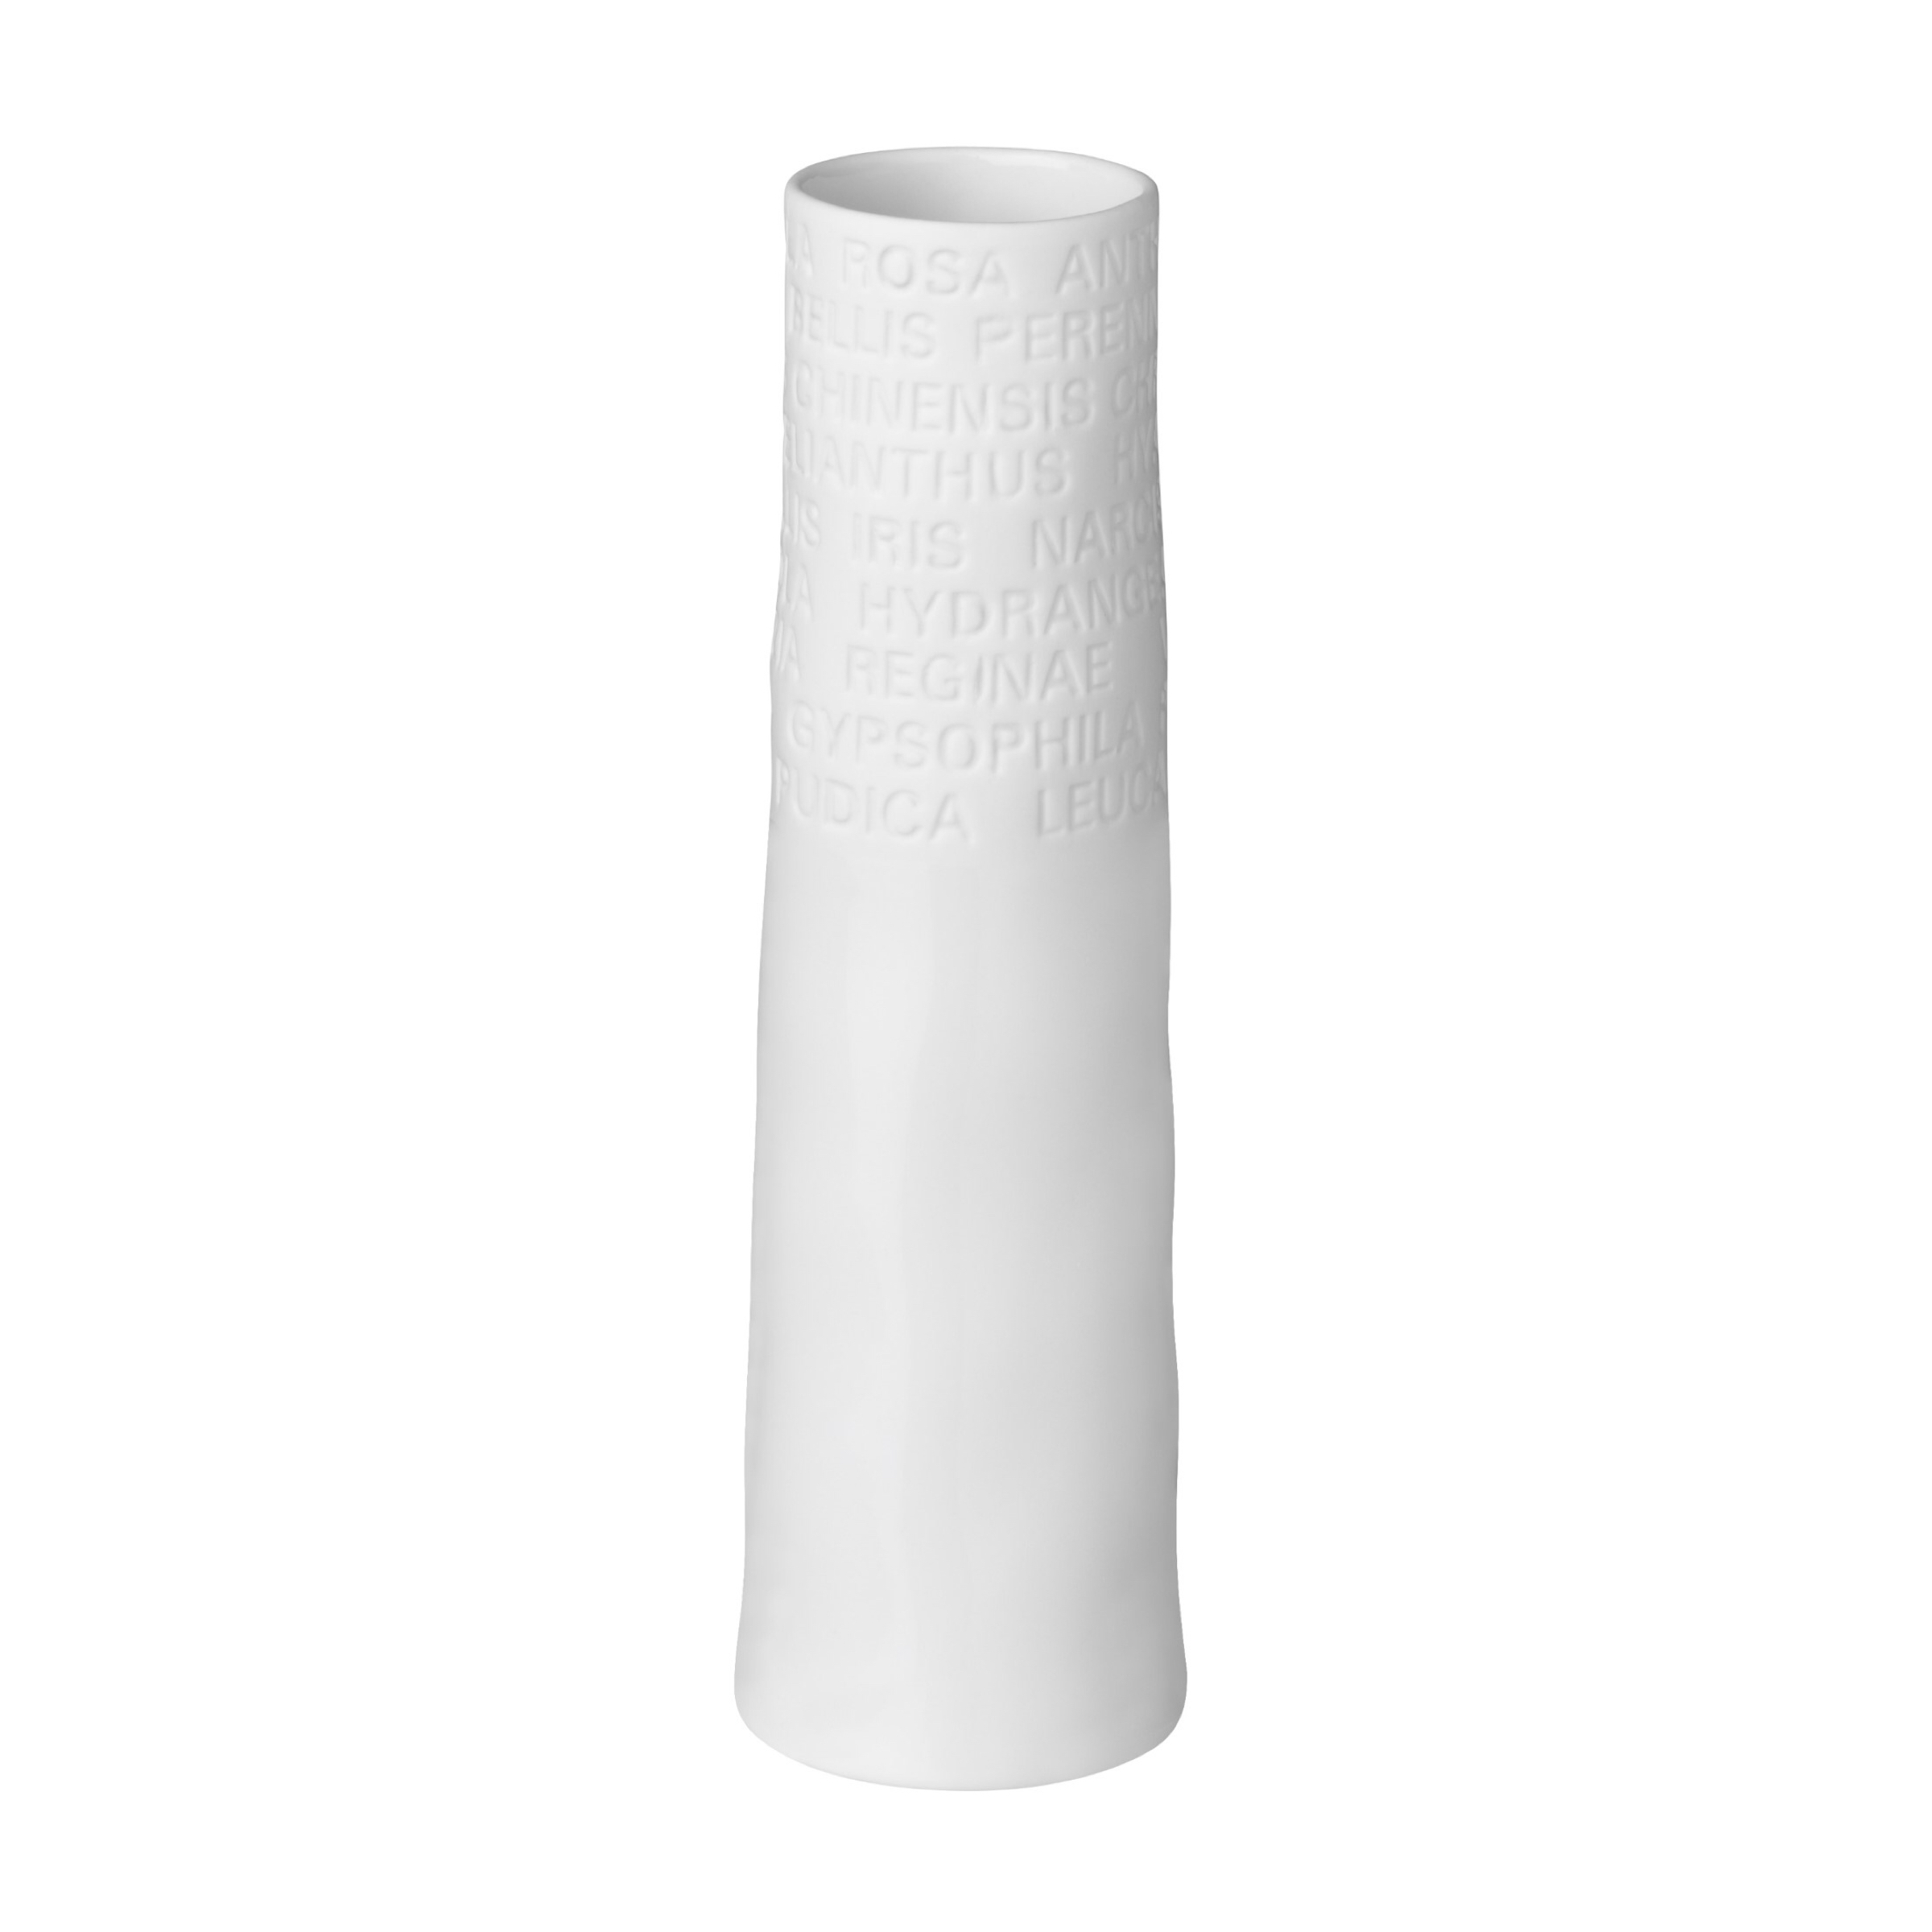 Räder White Porcelain Room Poetry Vase - Small 